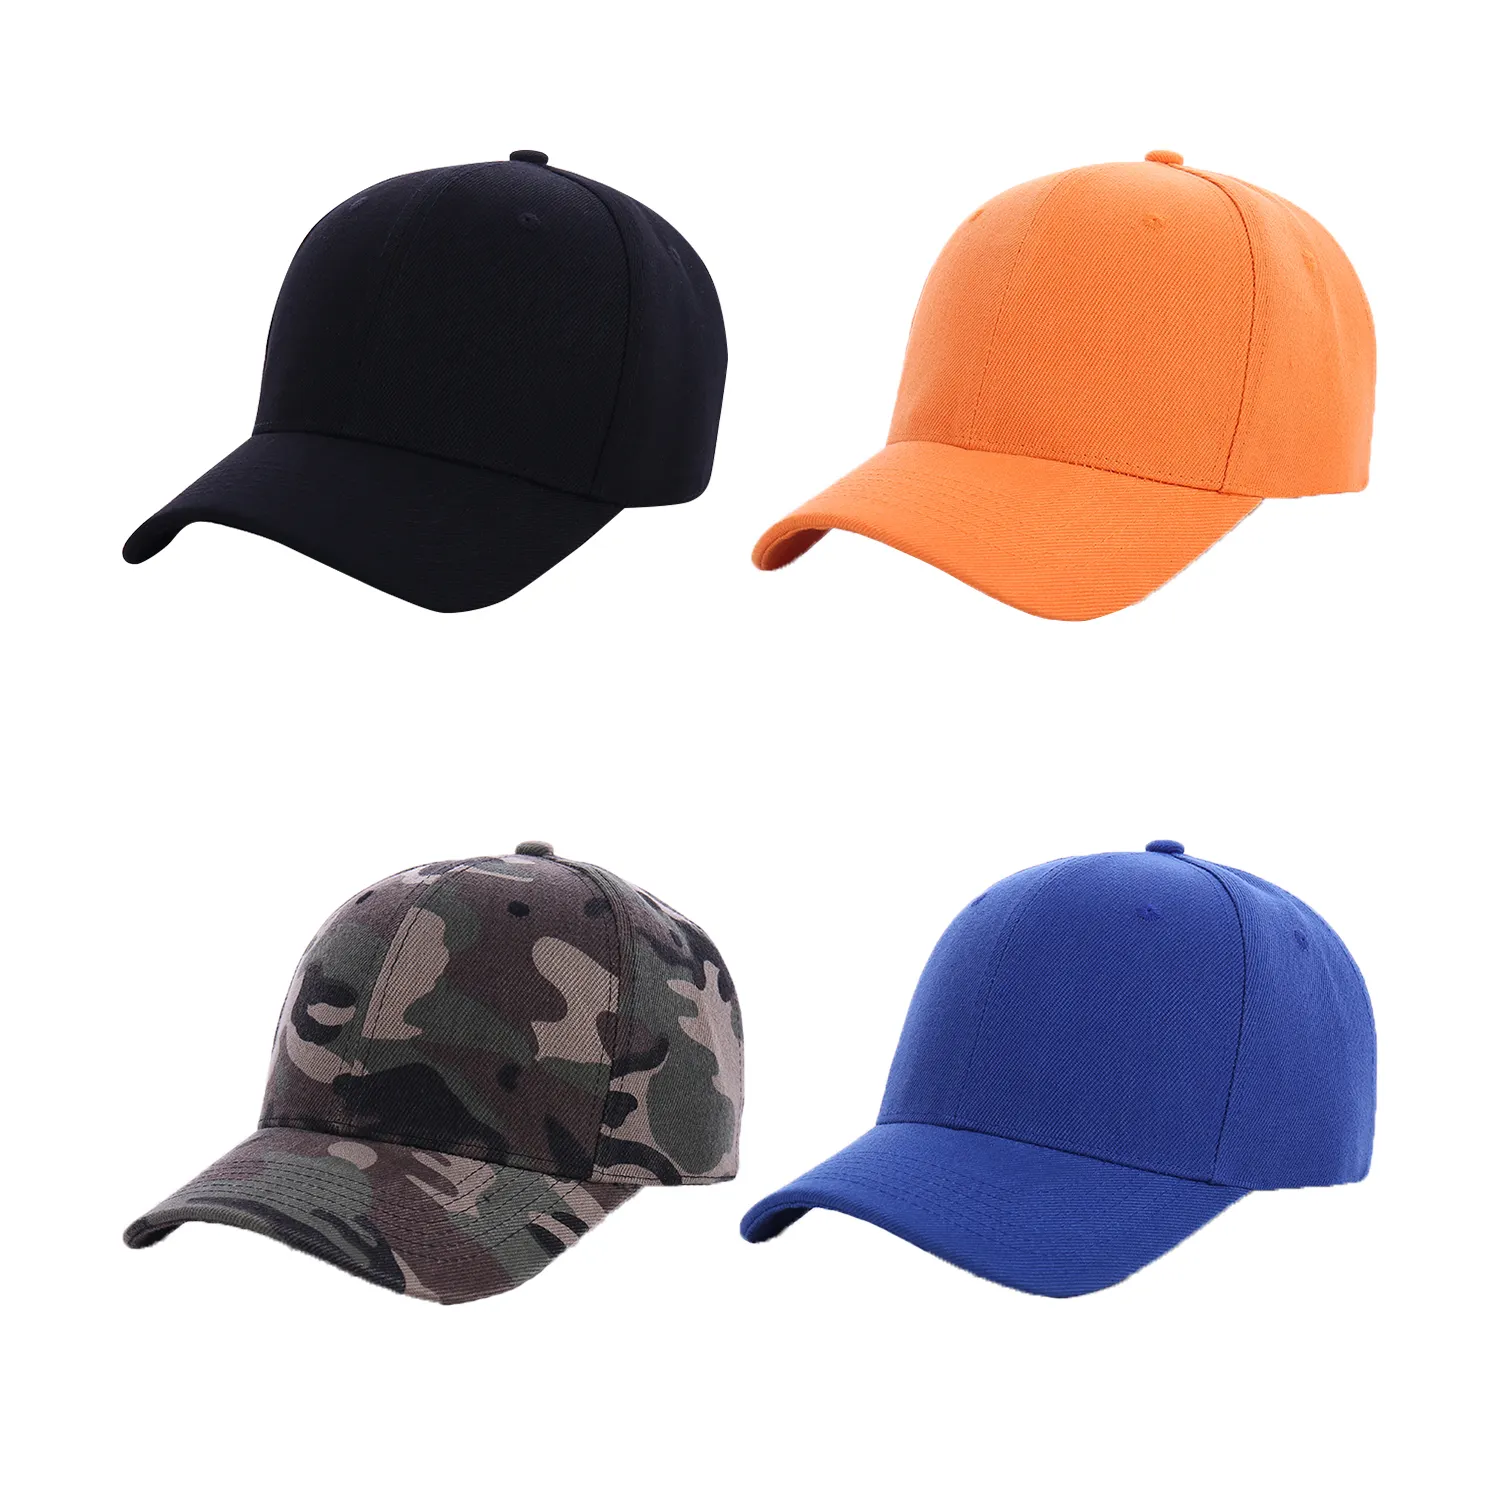 높은 품질 단색 빈 모자 사용자 정의 6 패널 스포츠 야구 모자 낮은 가격으로 최고 판매 사용자 정의 색상 저렴한